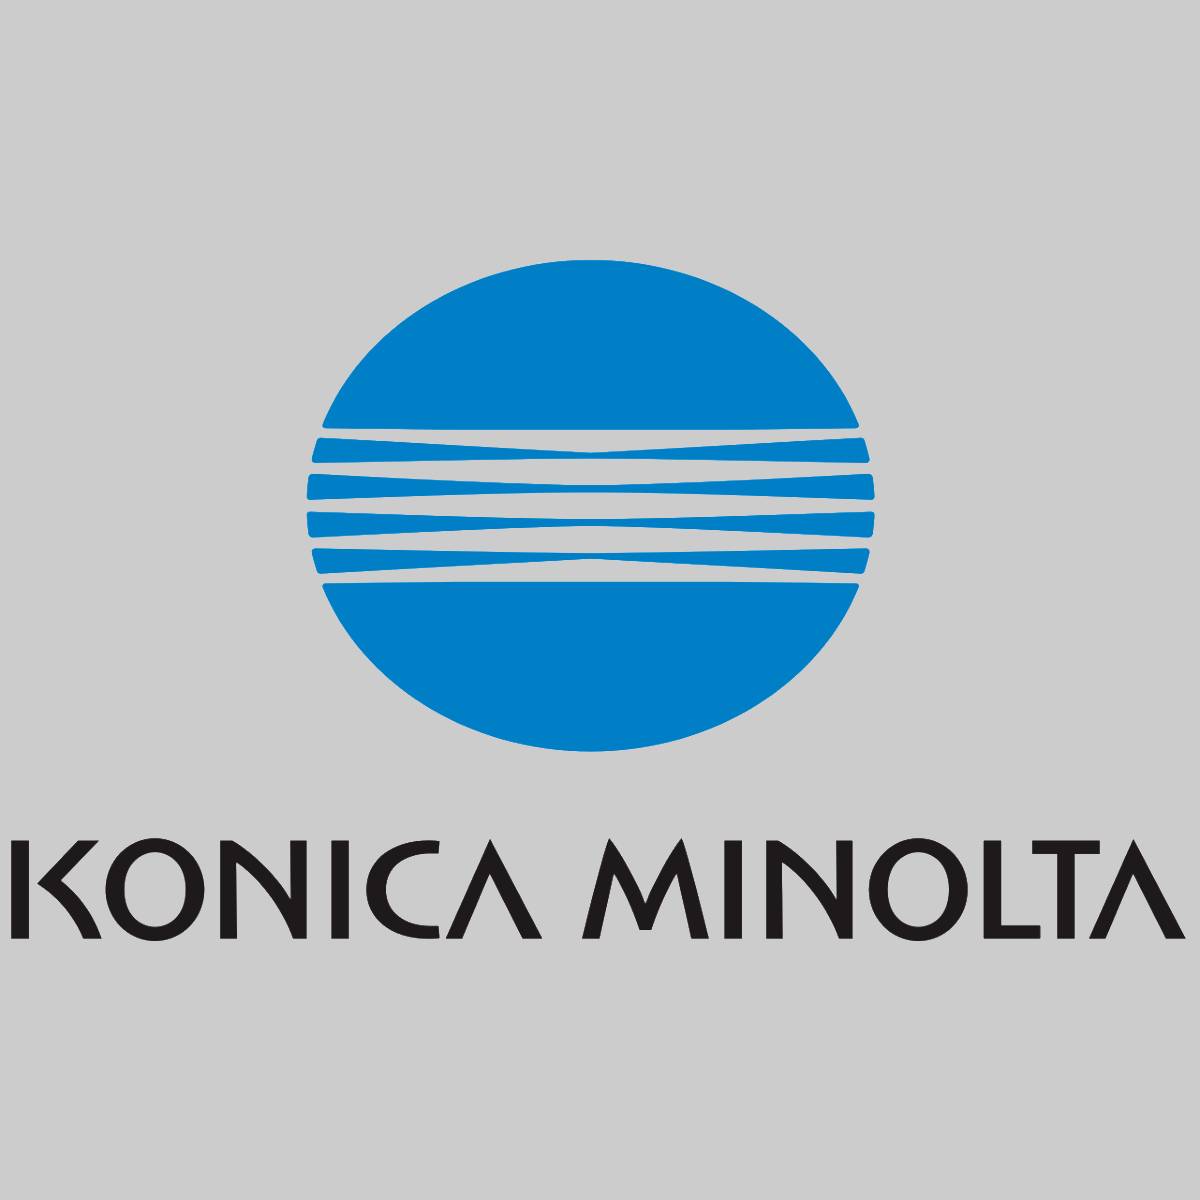 "Original Konica Minolta Toner Yellow A0V305H for Magicolor 1600 NEW OVP